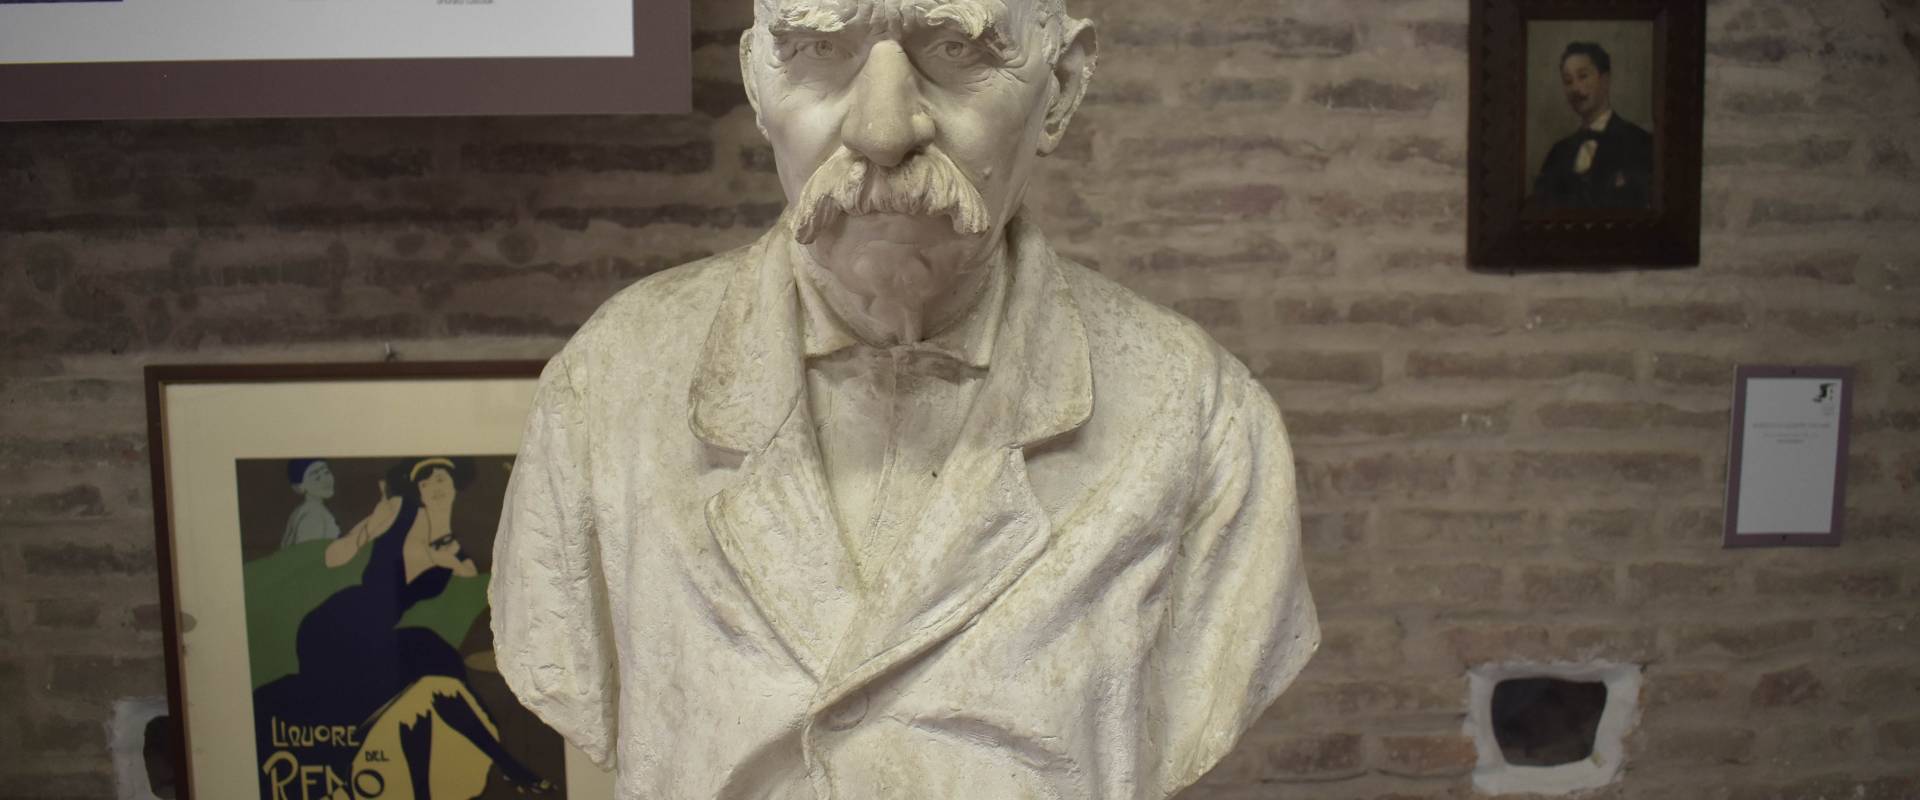 Giuseppe Zacchini, Busto di Luigi Galuppi da vecchio (?), Museo delle Storie di Pieve foto di Nicola Quirico